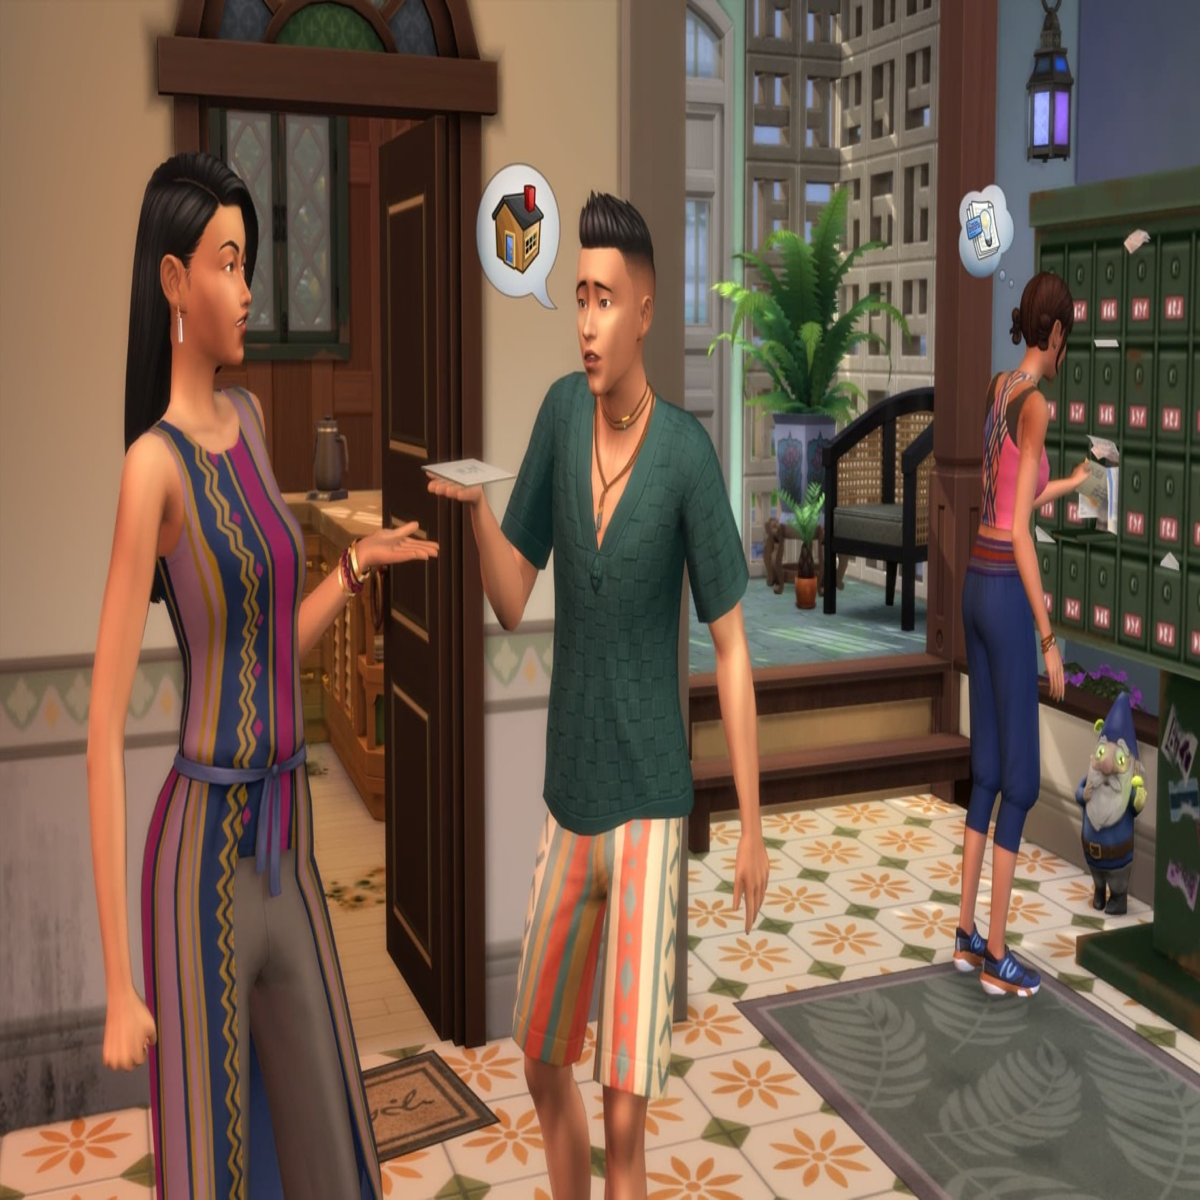 The Sims 4 Rental Houses poderá ser a Nova Expansão!